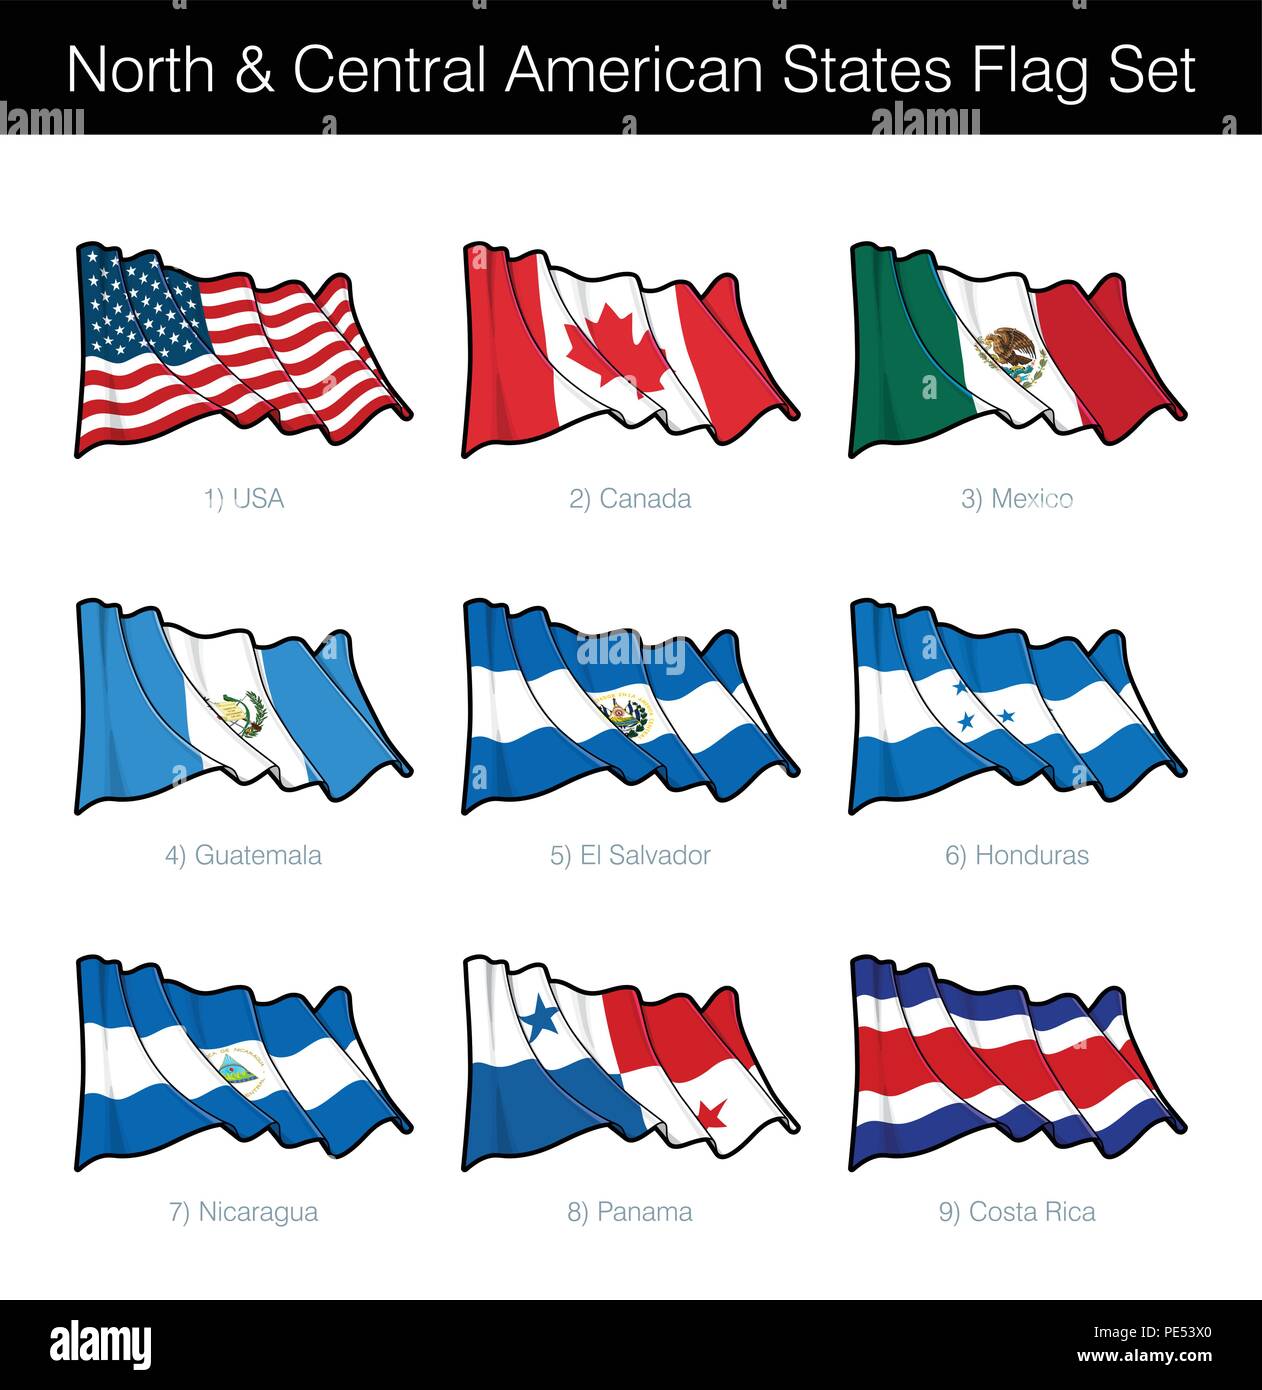 Nord- und Mittelamerikanischen Staaten wehende Flagge gesetzt. Das Set beinhaltet die Flaggen der USA, Kanada, Mexiko, Guatemala, El Salvador, Honduras, Nicaragua, Pan Stock Vektor